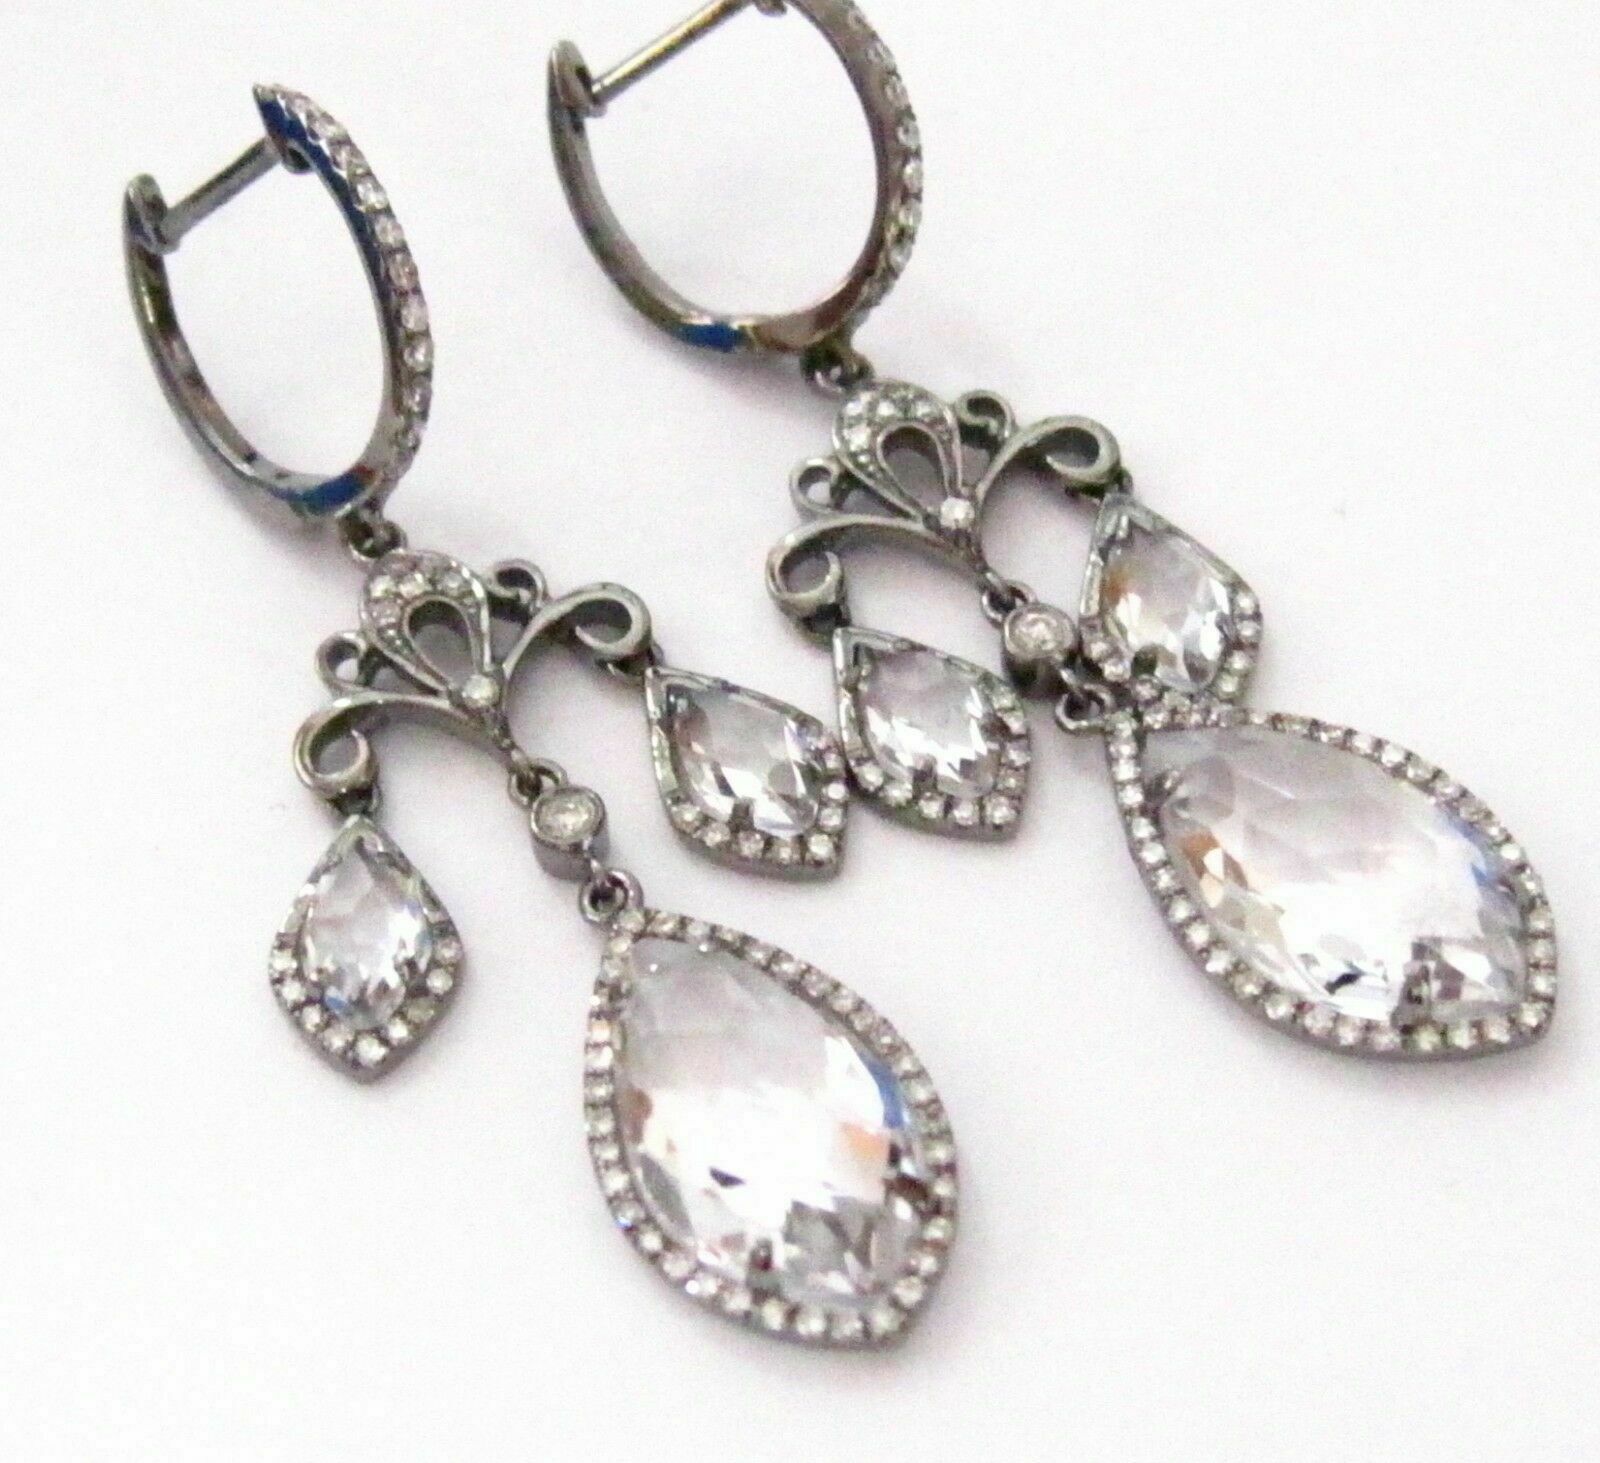 6.0 TCW Natural White Topaz & Diamonds Dangling Chandelier Earrings 14k WG